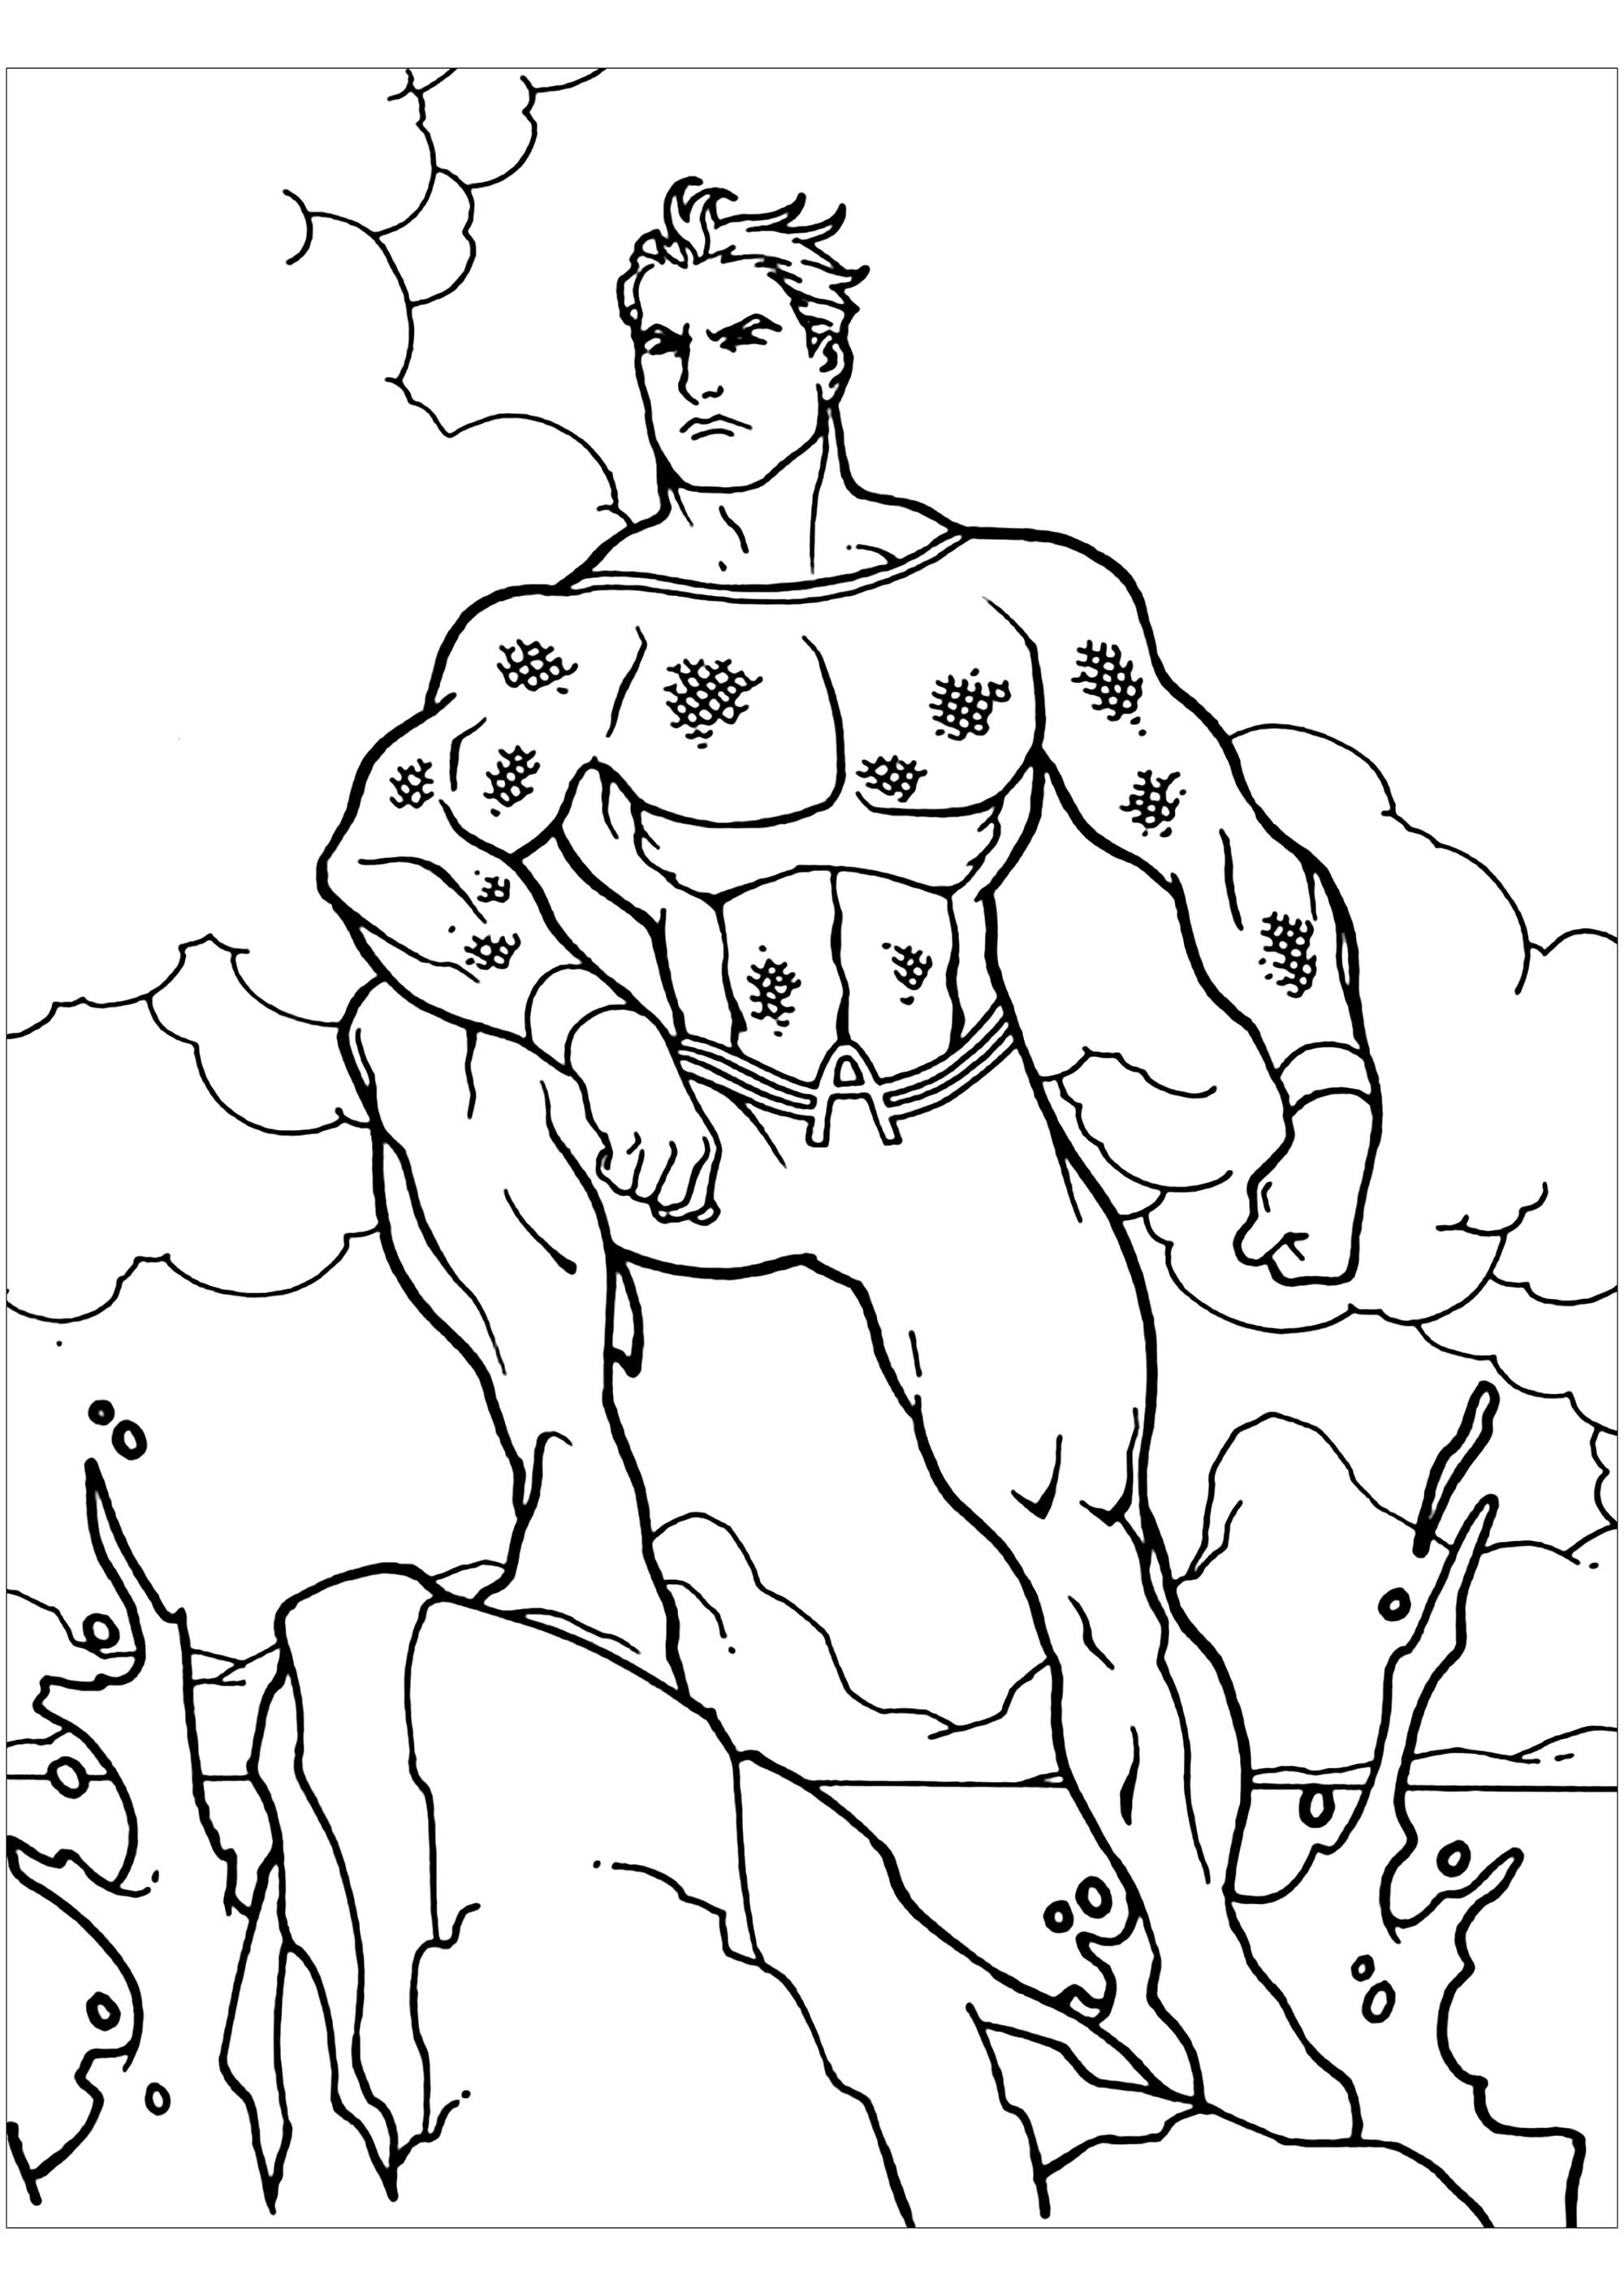 Image de Aquaman à télécharger et imprimer pour enfants